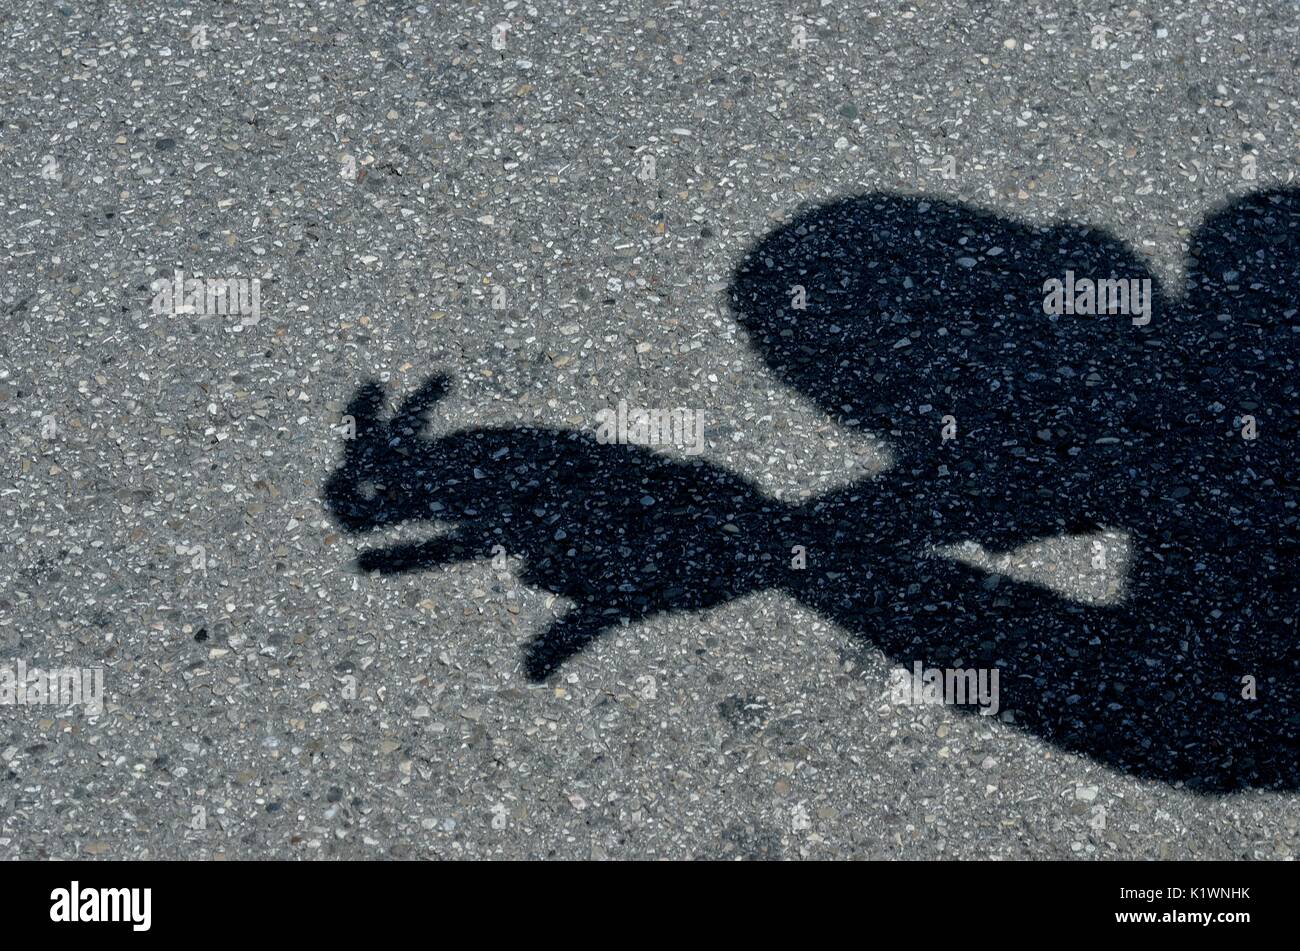 L'Art à la main - création d'un graphique depuis d'ombres sur la surface de la rue à l'aide de mains, Mestre, Italie, Europe Banque D'Images